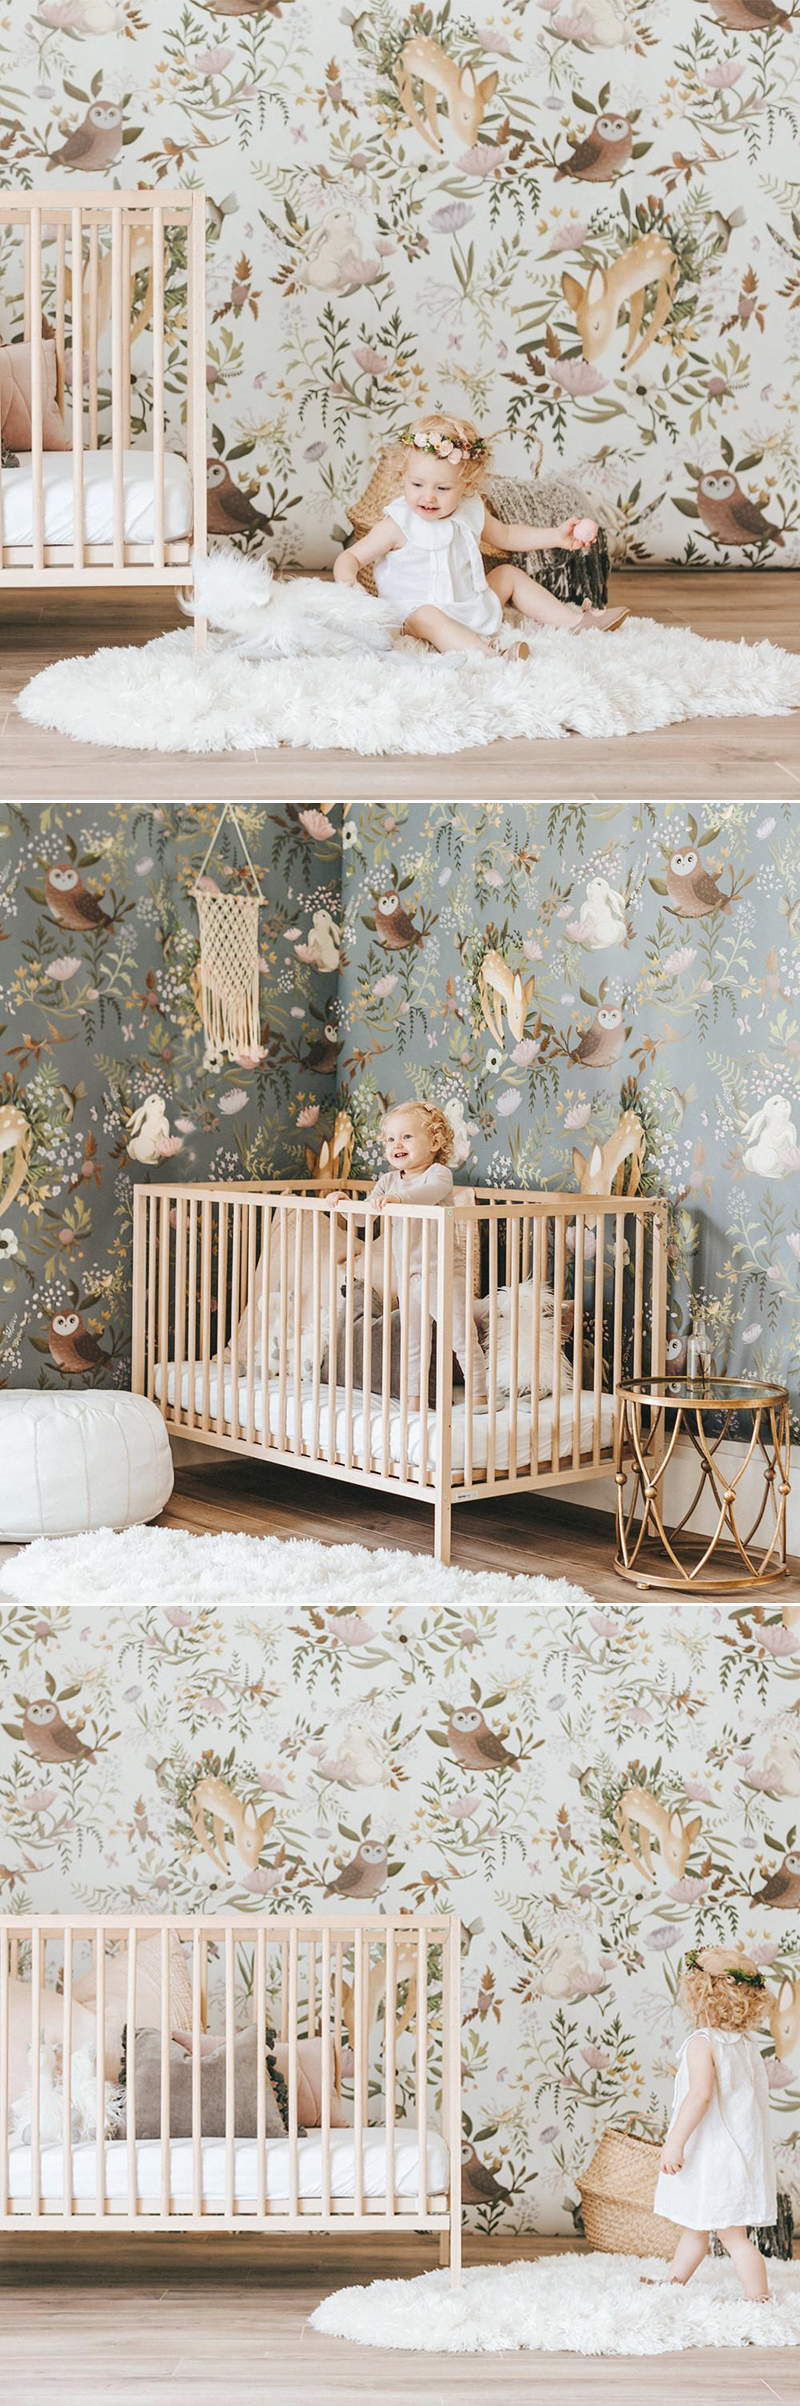 wallpaper baby room ideas